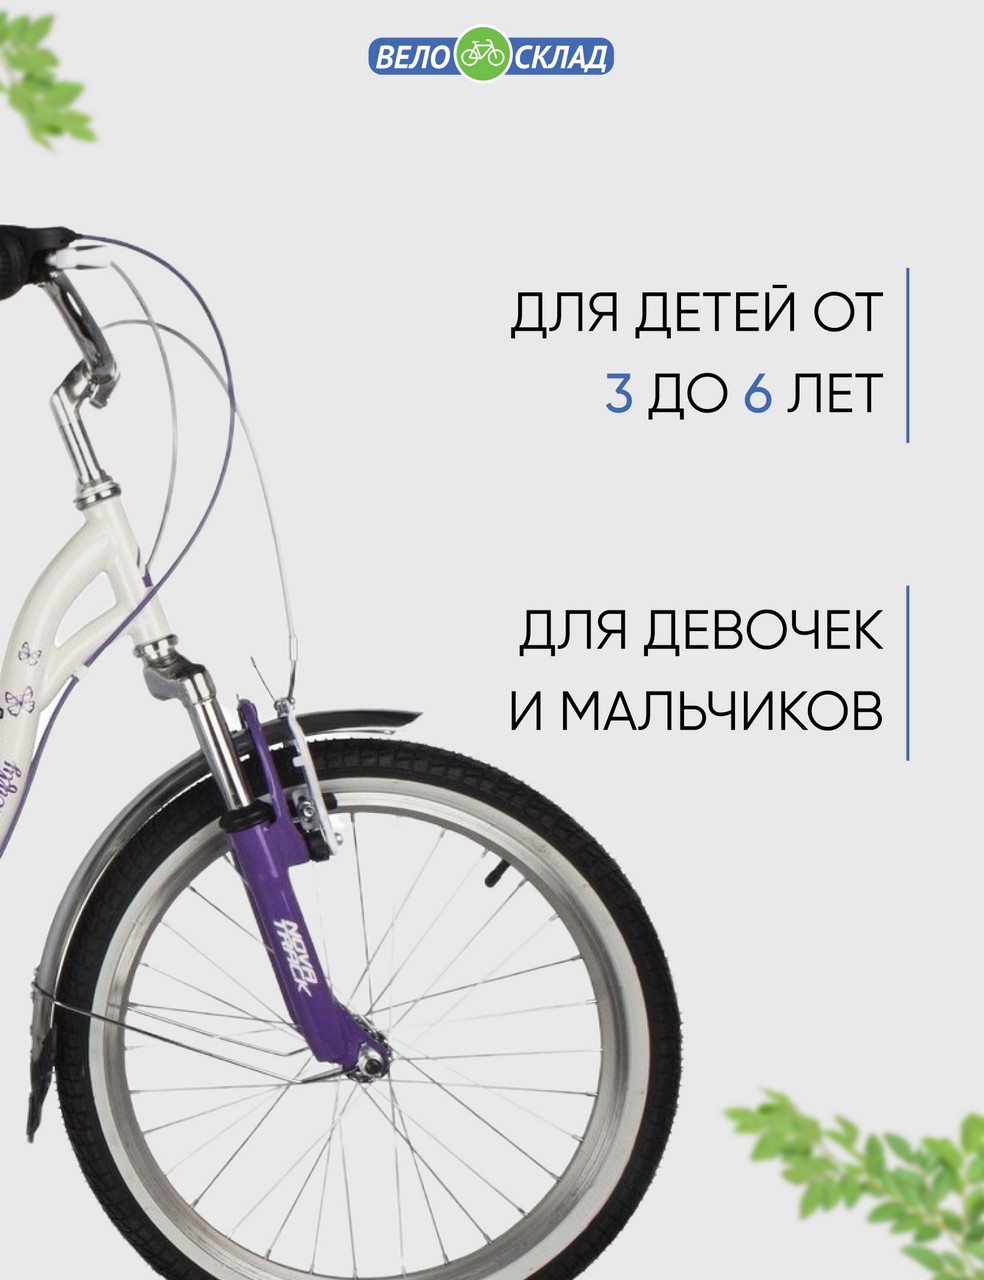 фото Детский велосипед novatrack butterfly 20 6.v, год 2022, цвет белый-фиолетовый